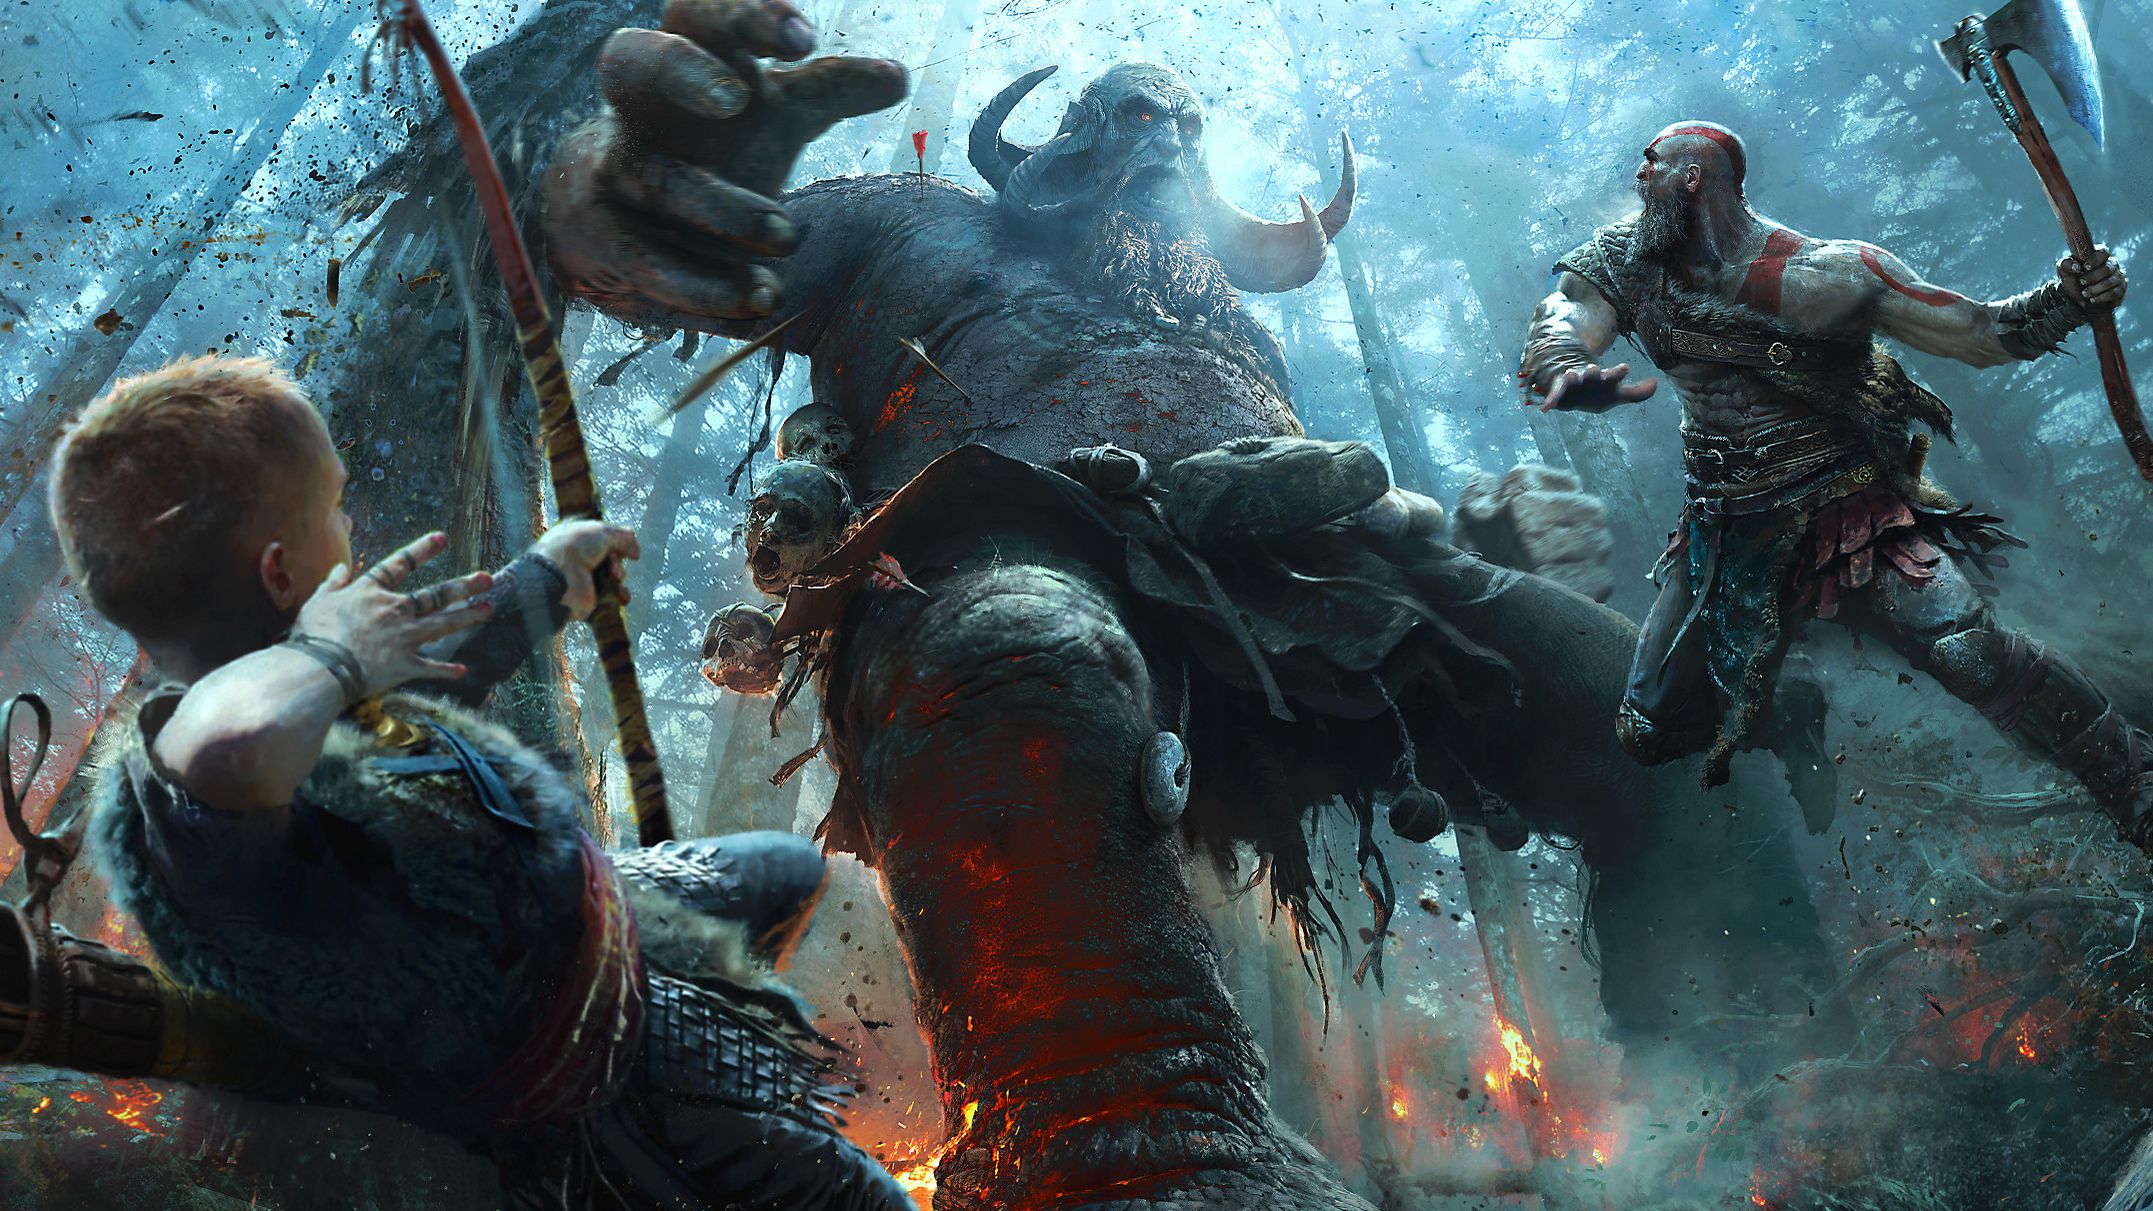 God of War é anunciado para PC e você já pode garantir sua cópia no Steam